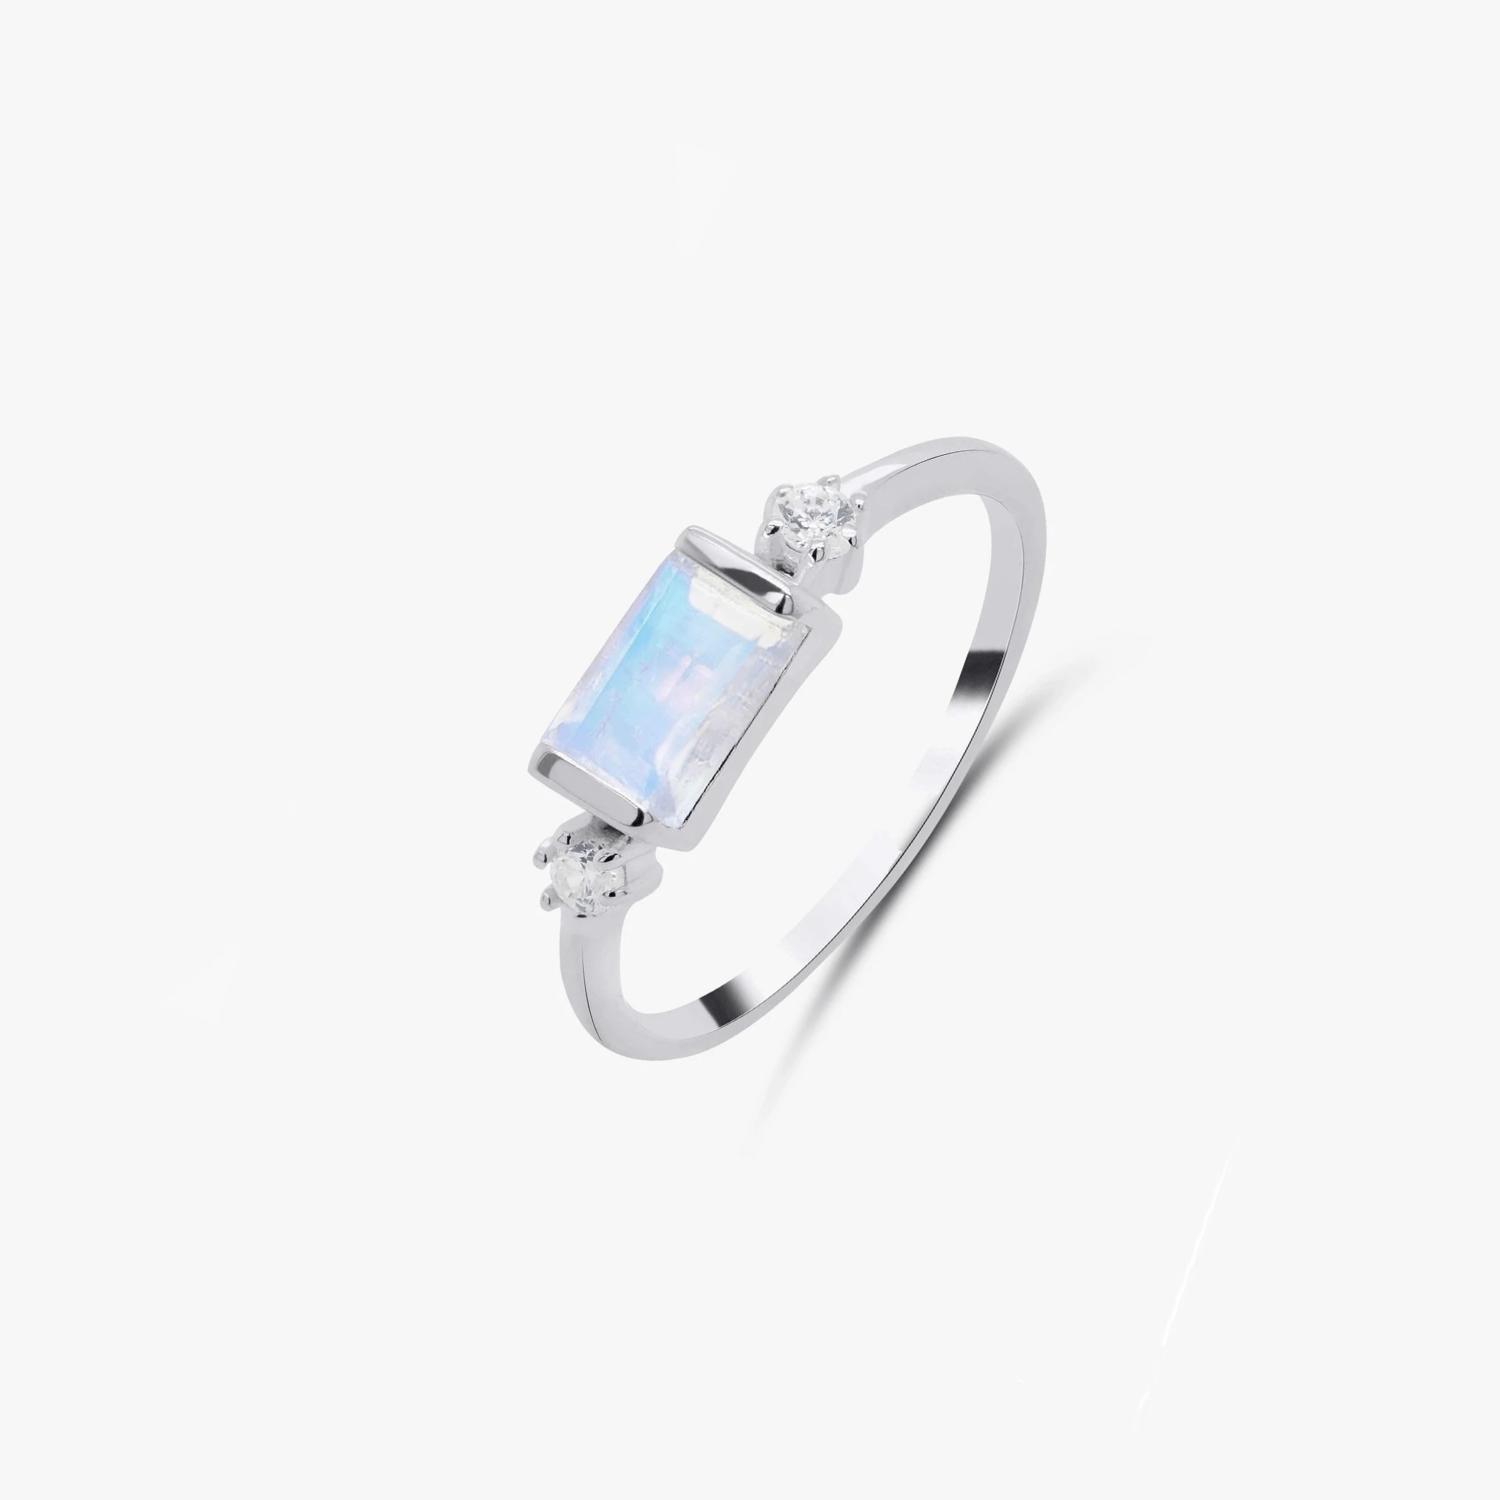 Eva silver ring – Moonstone